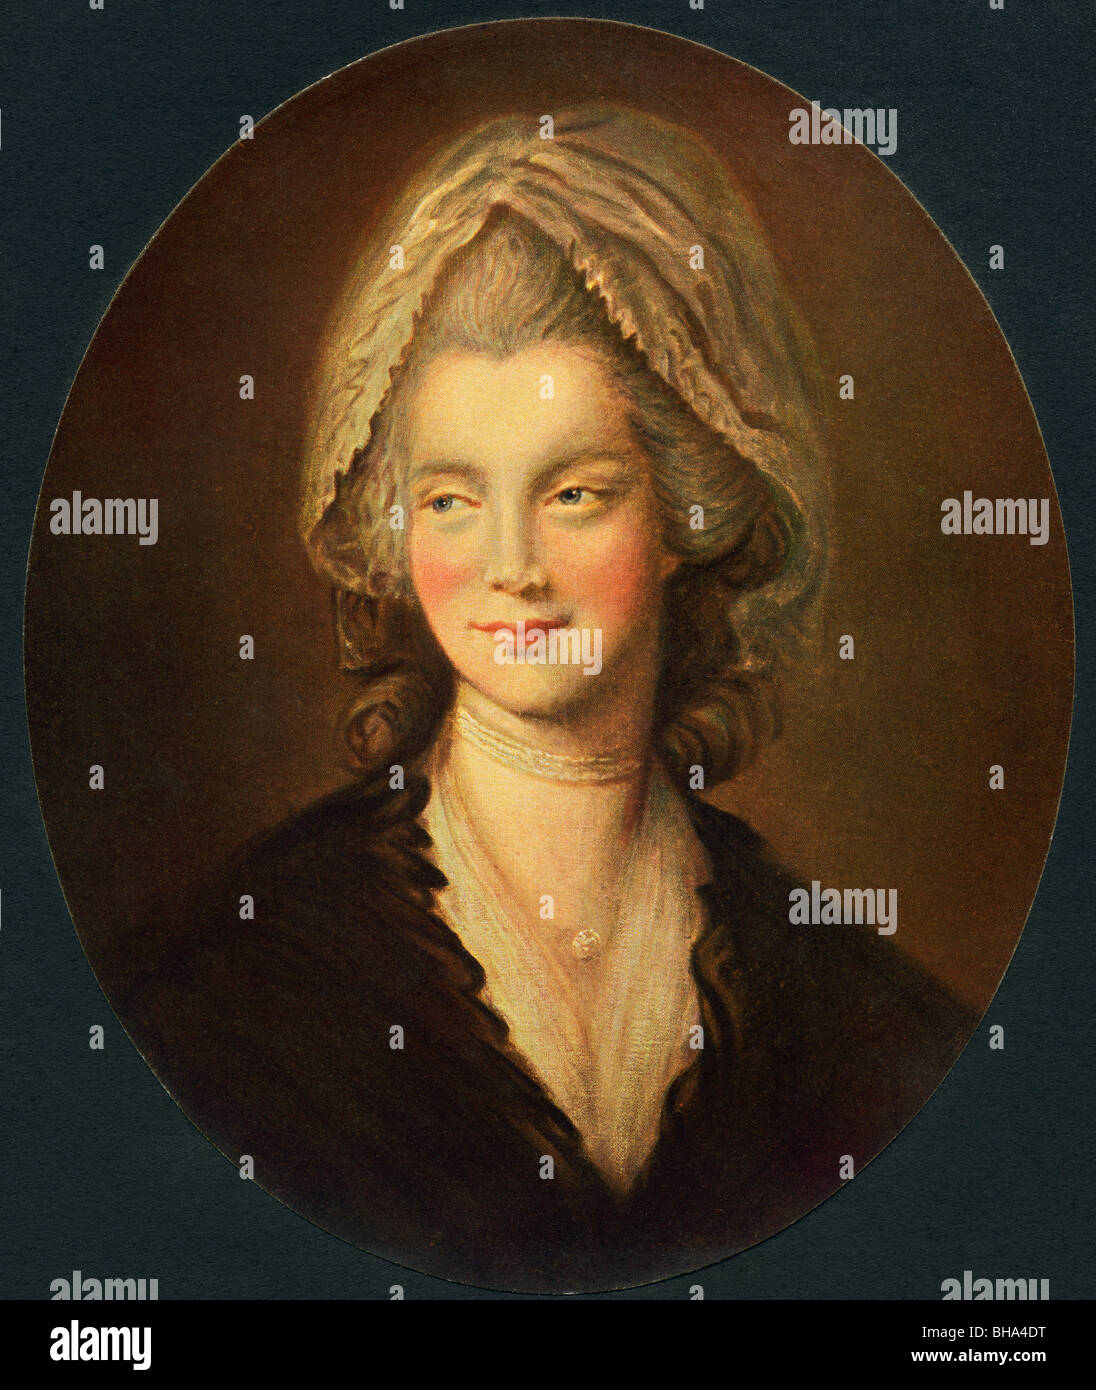 Charlotte di Mecklenburg-Strelitz, 1744 a 1818. Regina consorte del Regno Unito come moglie del re George III. Foto Stock